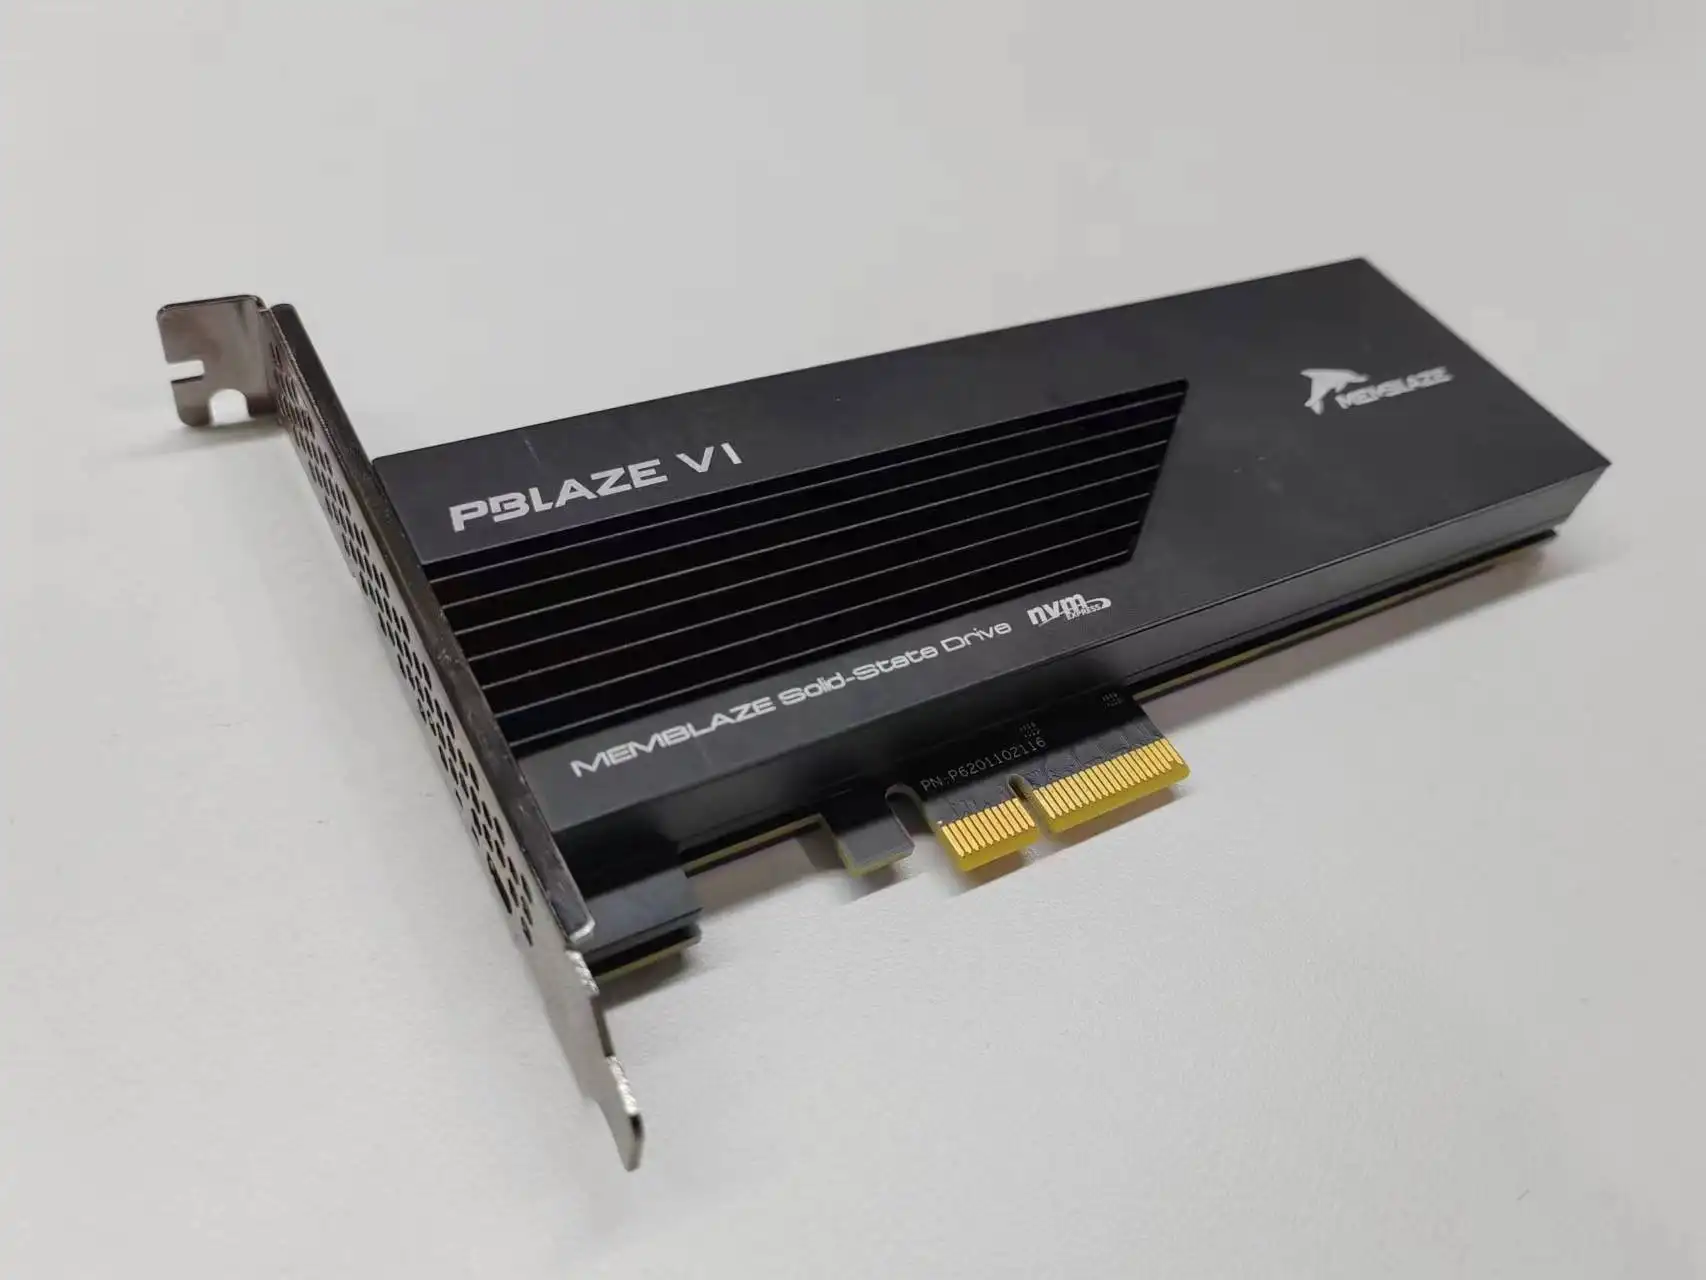 PBlaze6 6530 prestazioni migliori rispetto a SATA SSD 3D Nand NVMe1.4 PCIe 4.0 AIC 1.92T 2T SSD